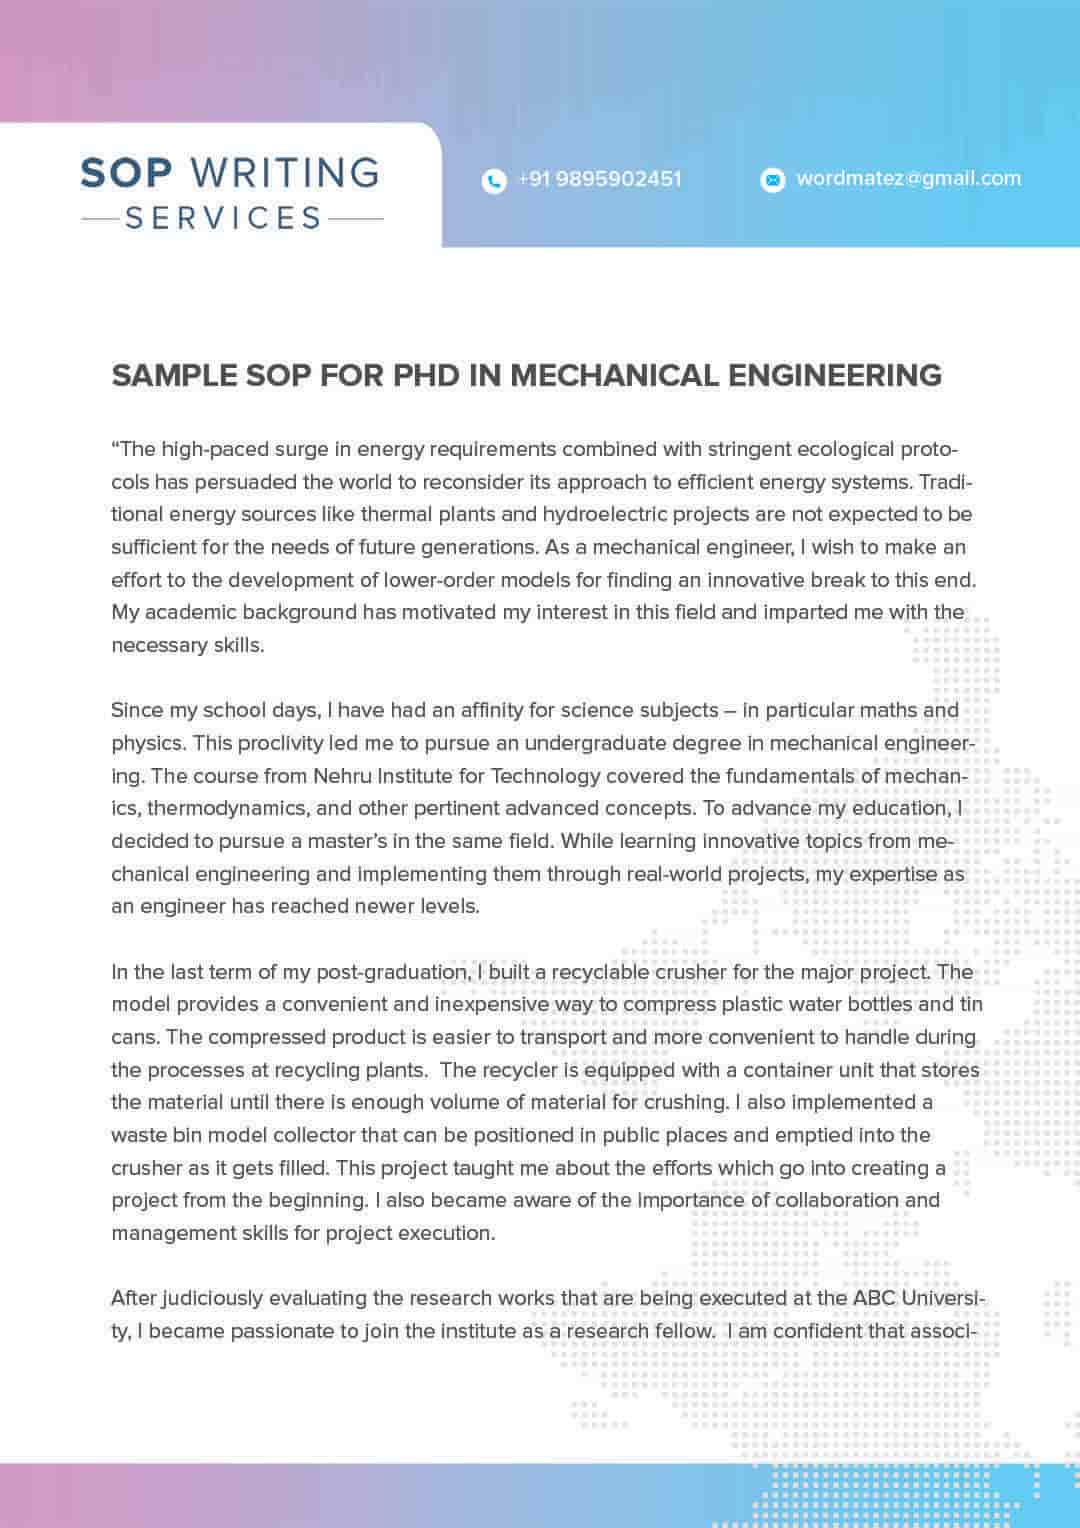 Sample sop for PhD in mechanical engineering